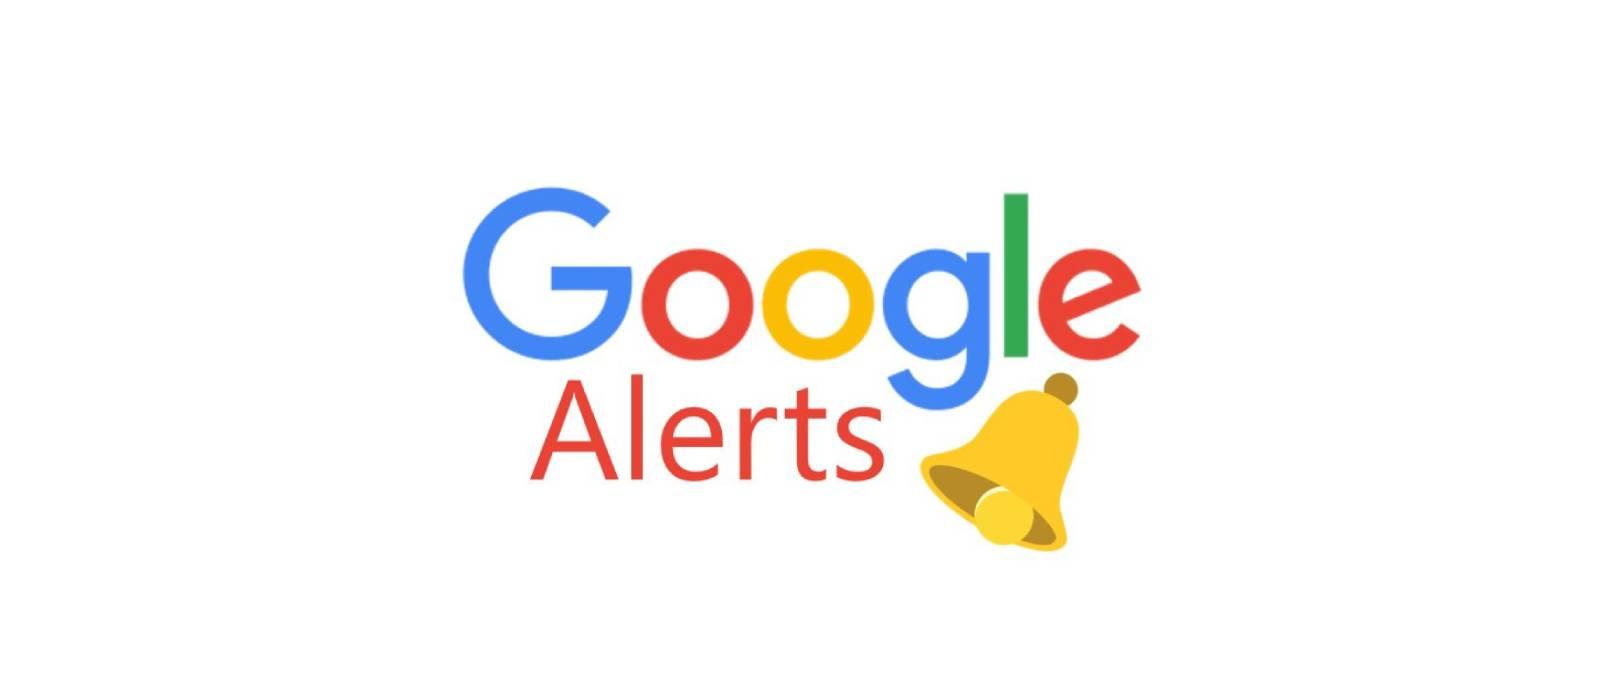 Narzędzie Google Alerts - jak korzystać z alertów google'a i dlaczego warto? 